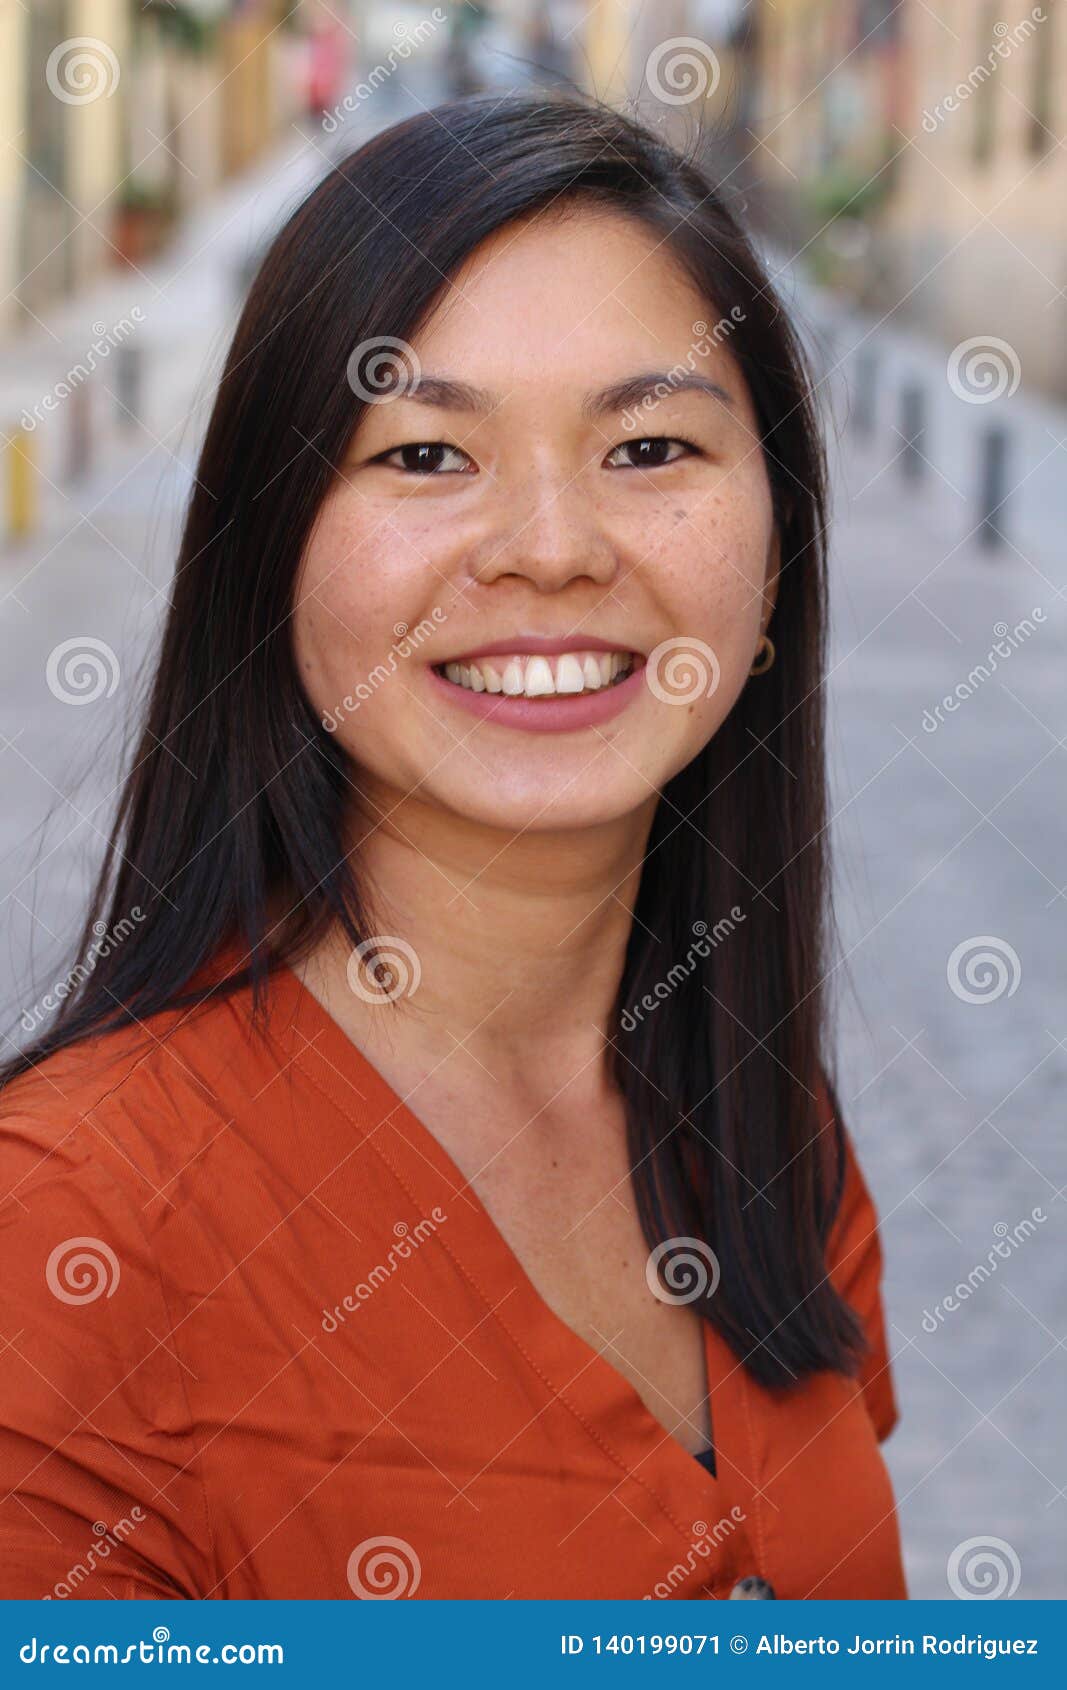 Cute asian woman - XXX photo